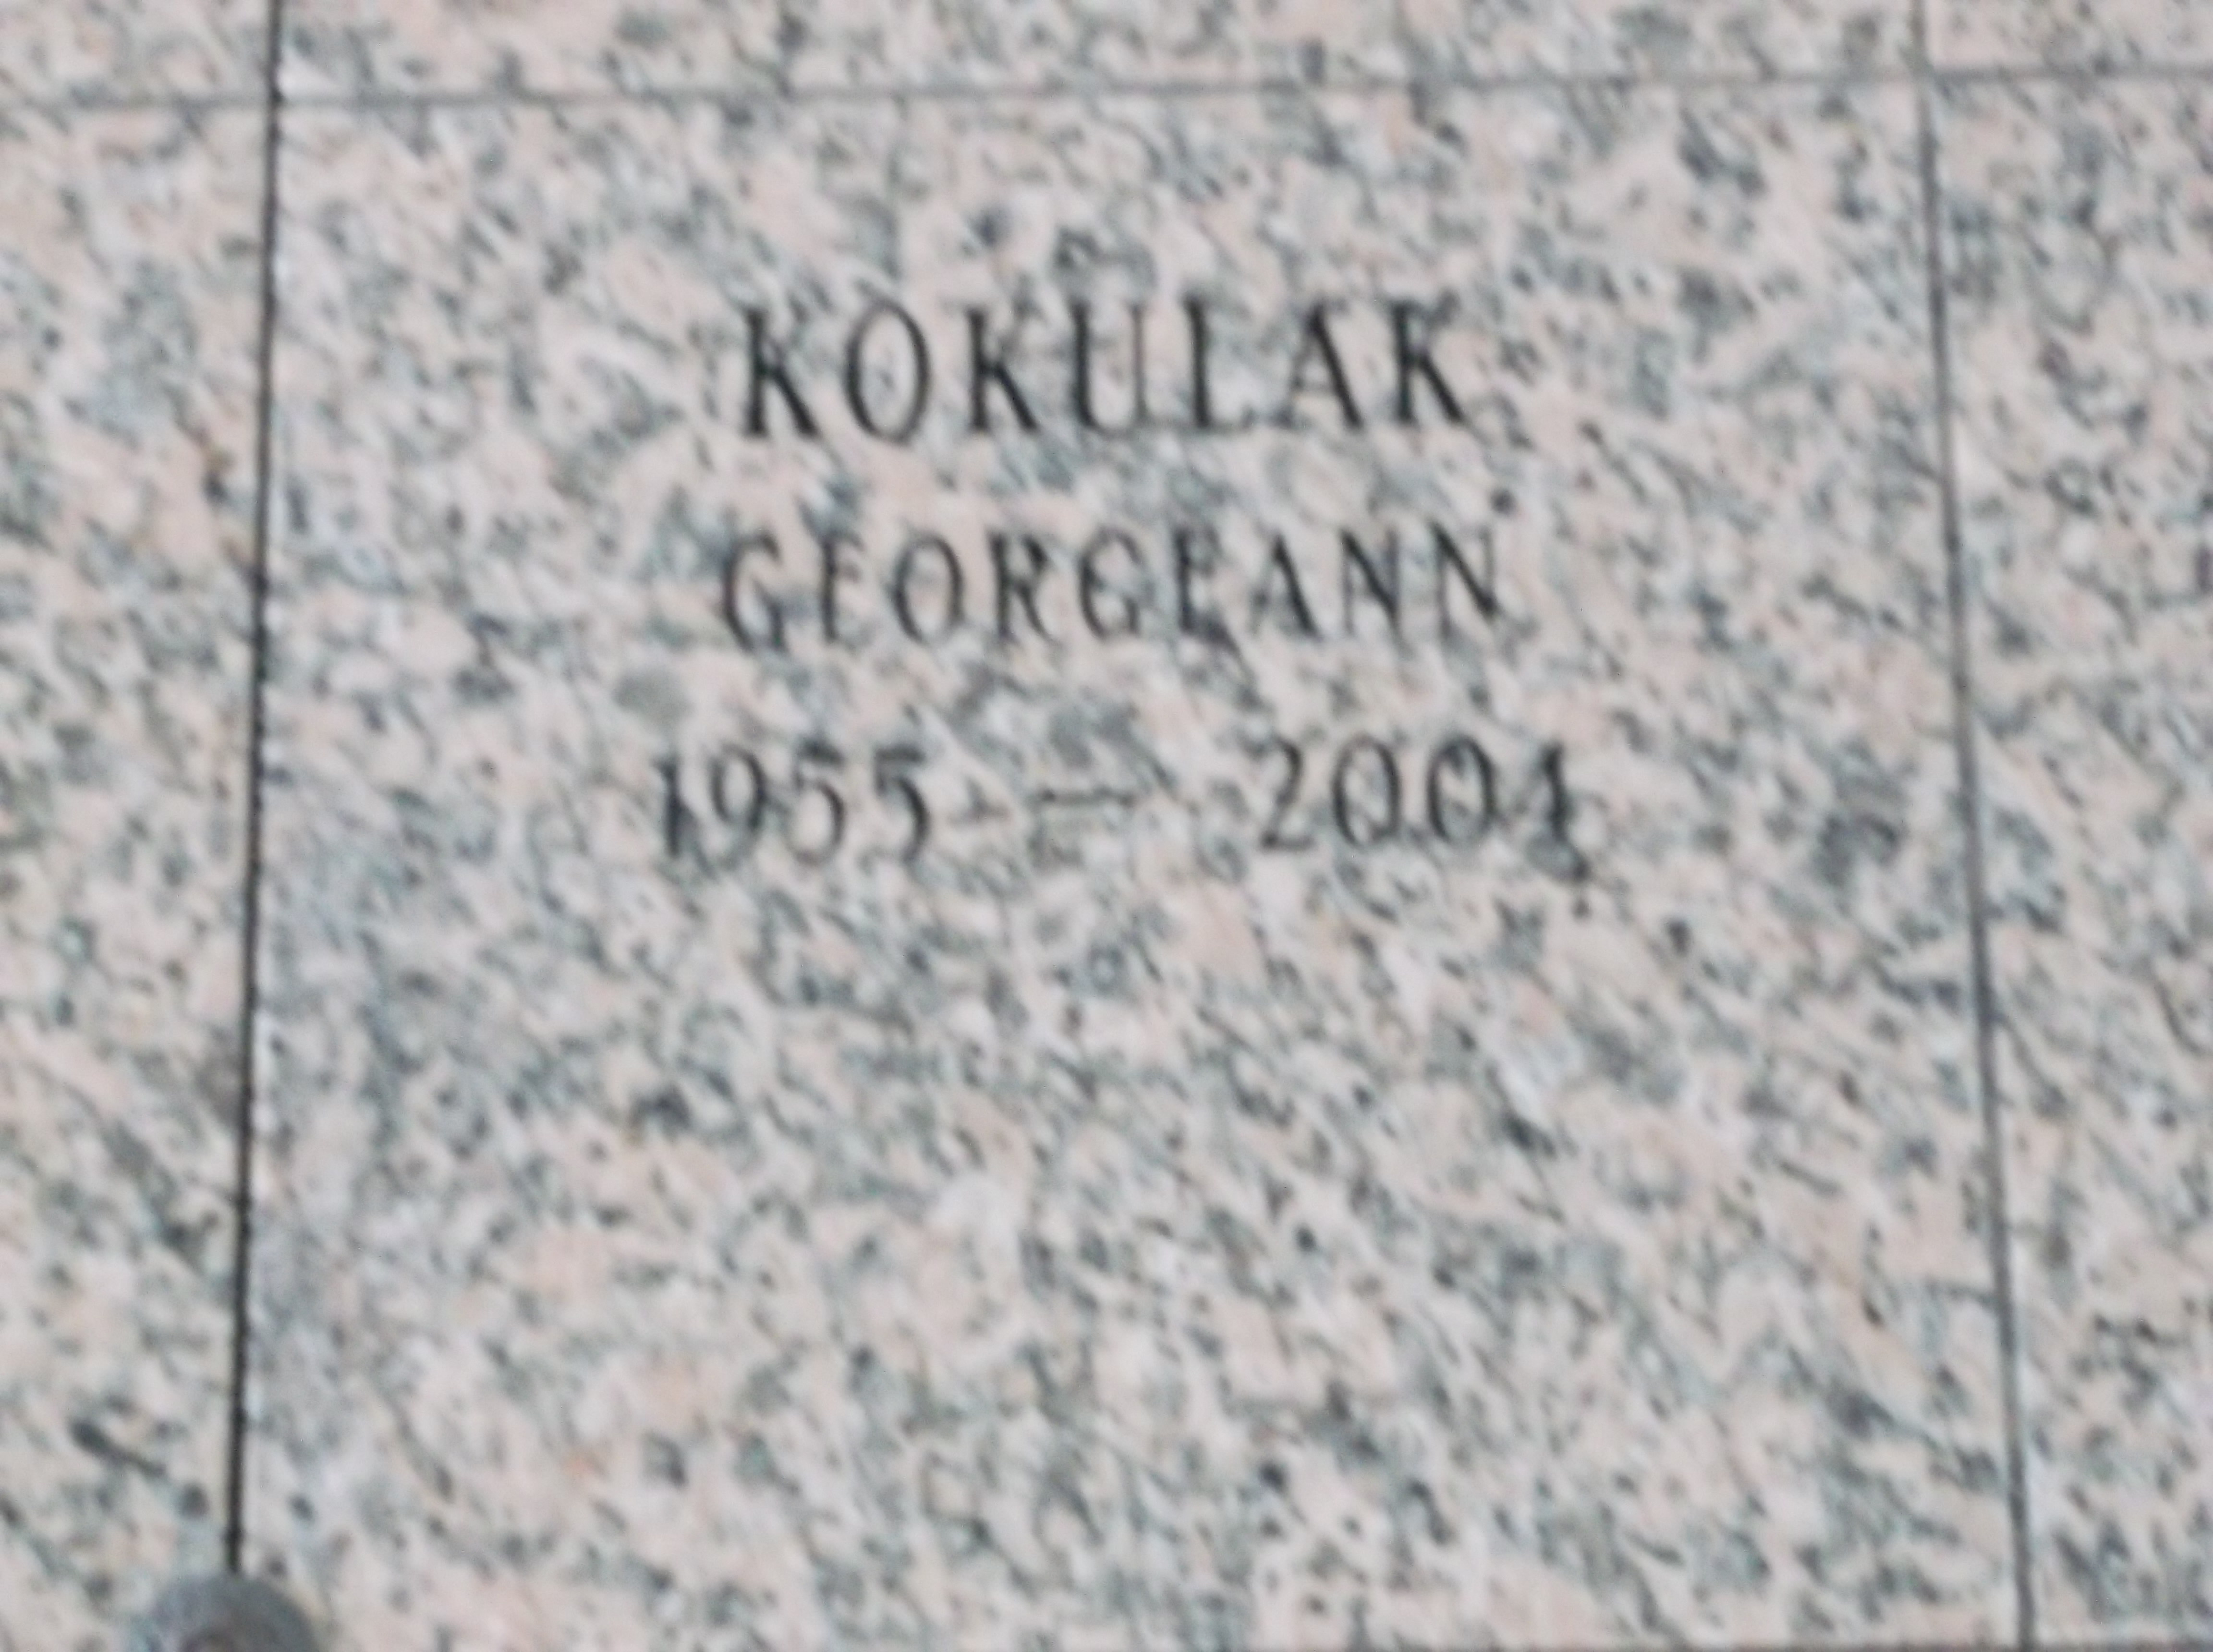 Georgeann Kokulak